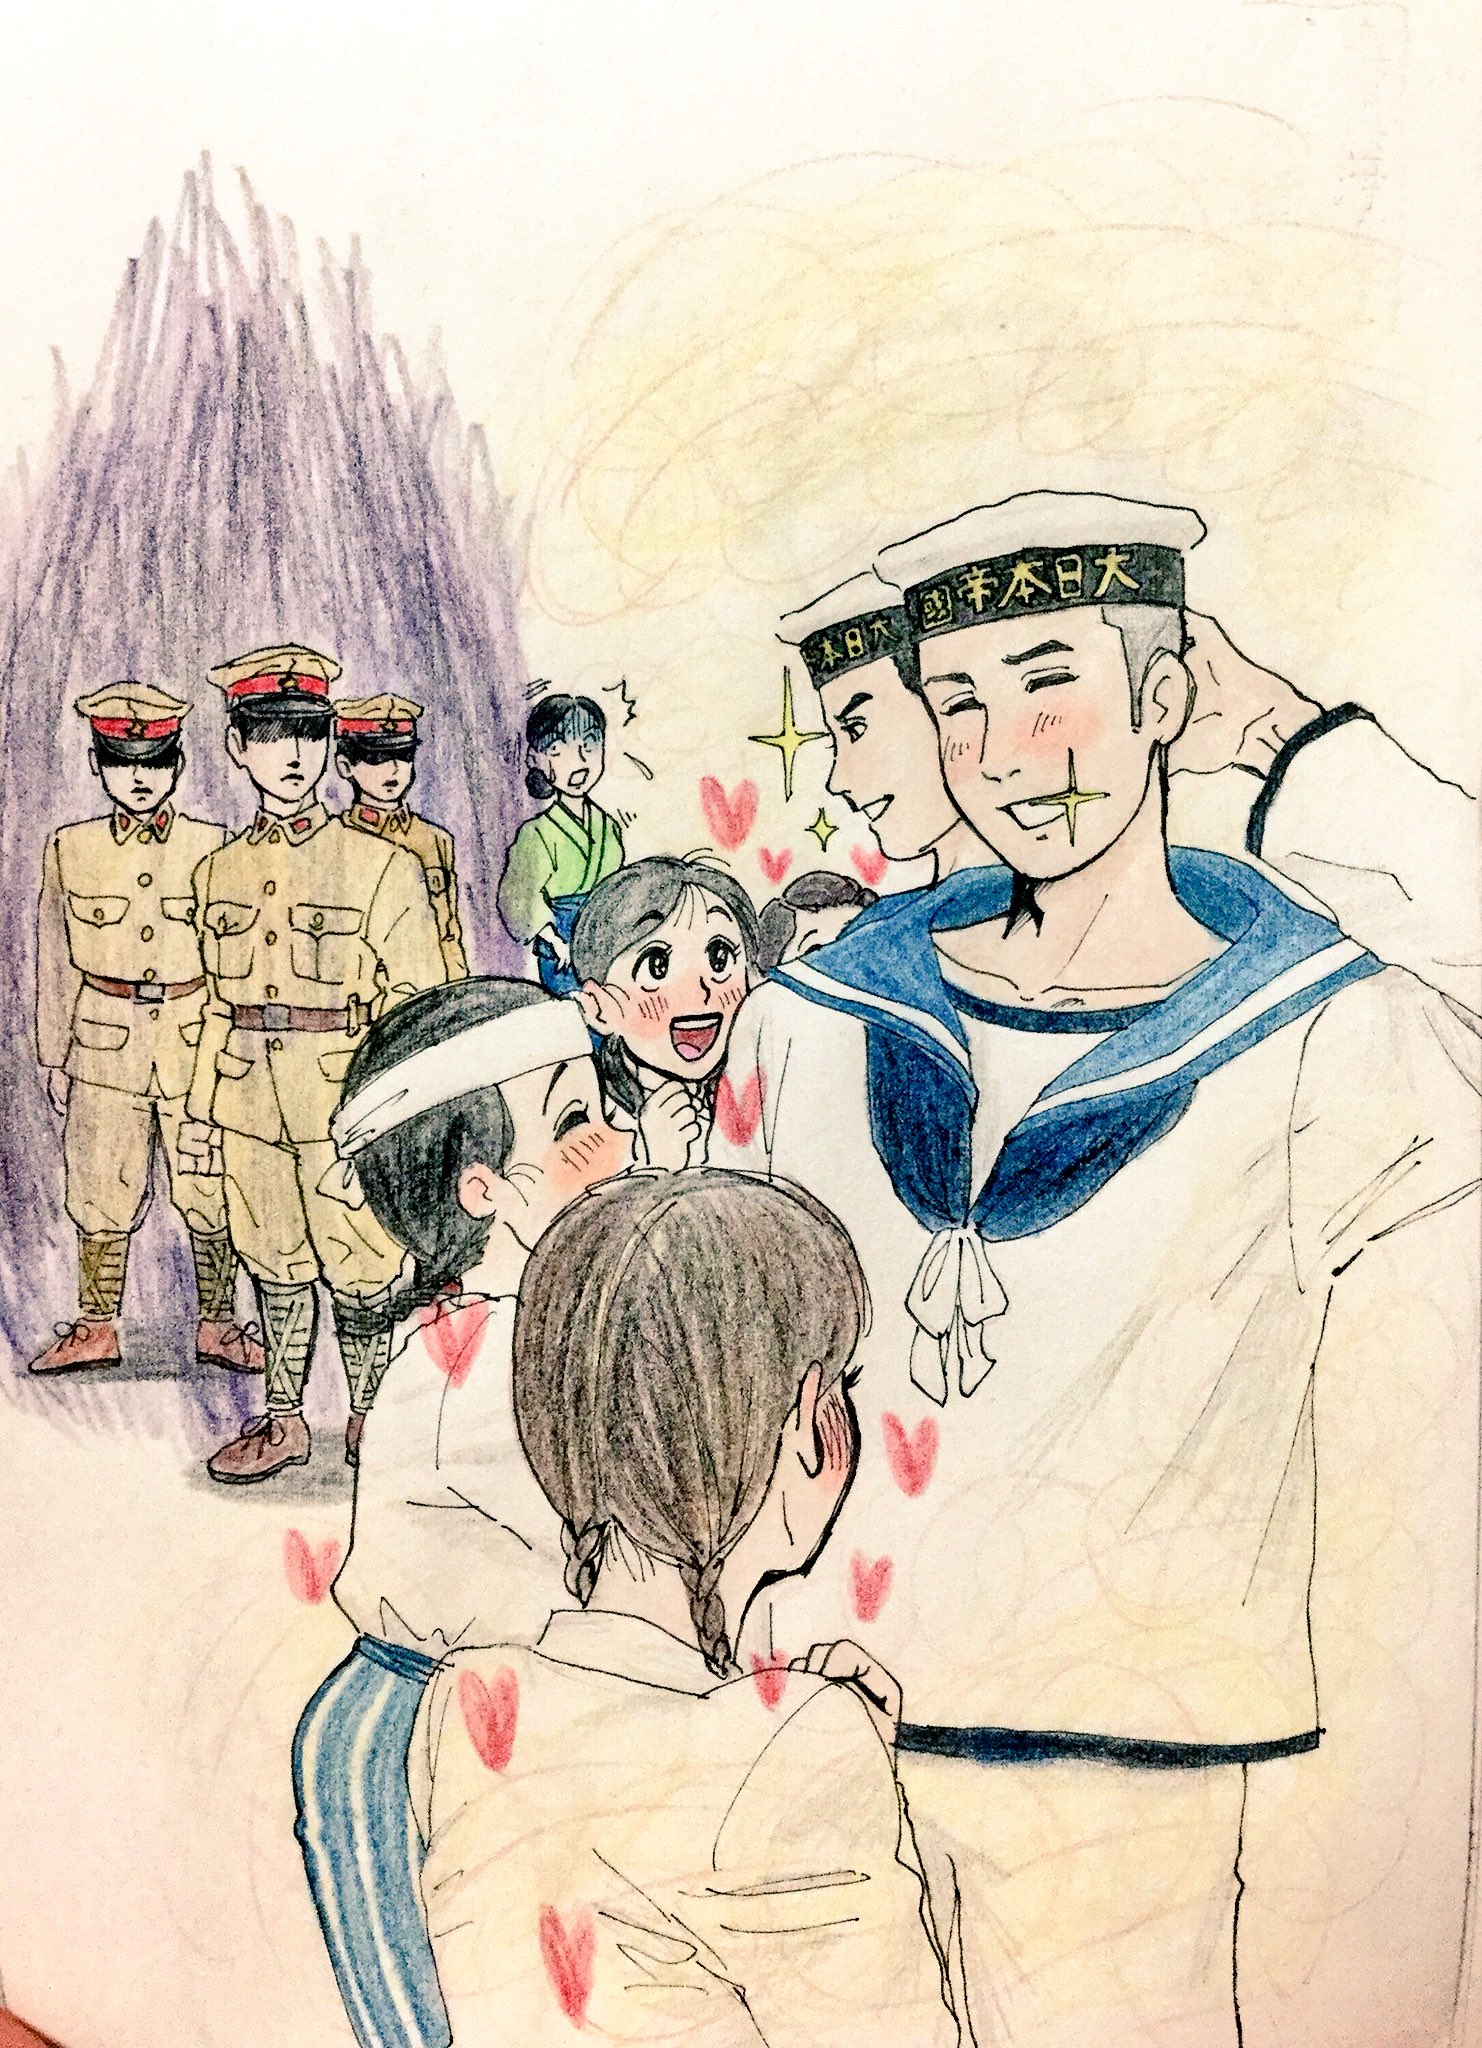 おすけ 陸に上がつて來た海軍兵が女學生に圍まれてゐる所を目擊し 餘りの羨ましさに負のオーラを隱せない陸軍兵之圖 絵描きさんとつながりたい イラスト王国 T Co Ki9jnegtpe Twitter